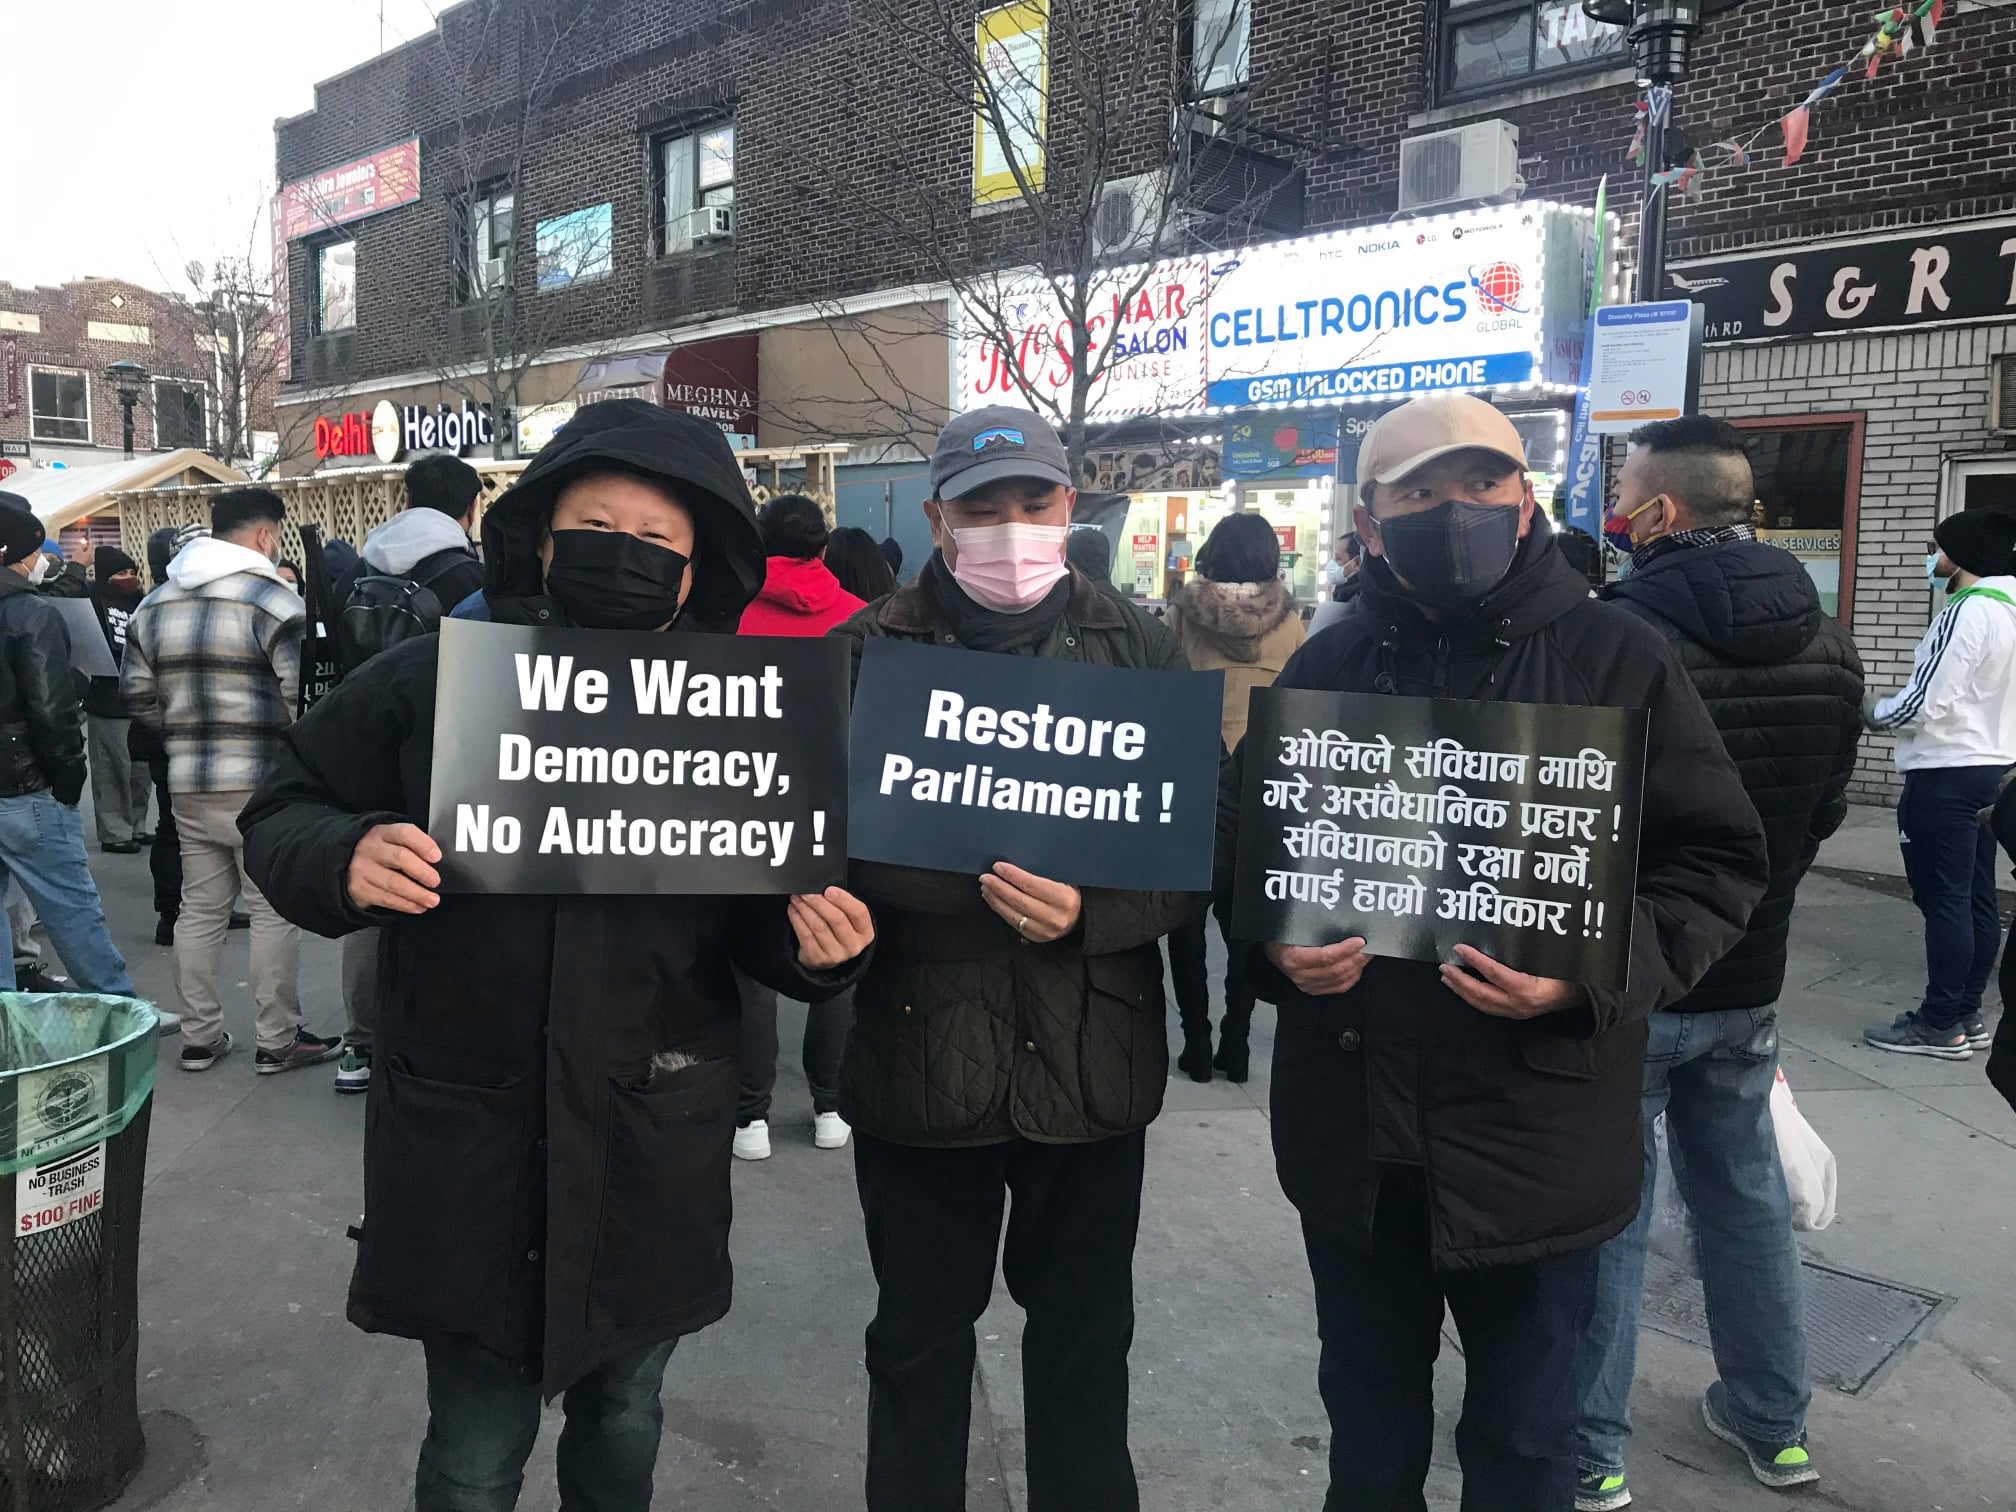 'रिस्टोर पार्लियामेन्ट' भन्दै प्रतिनिधि सभा विघटनविरुद्ध न्युयोर्कमा प्रदर्शन